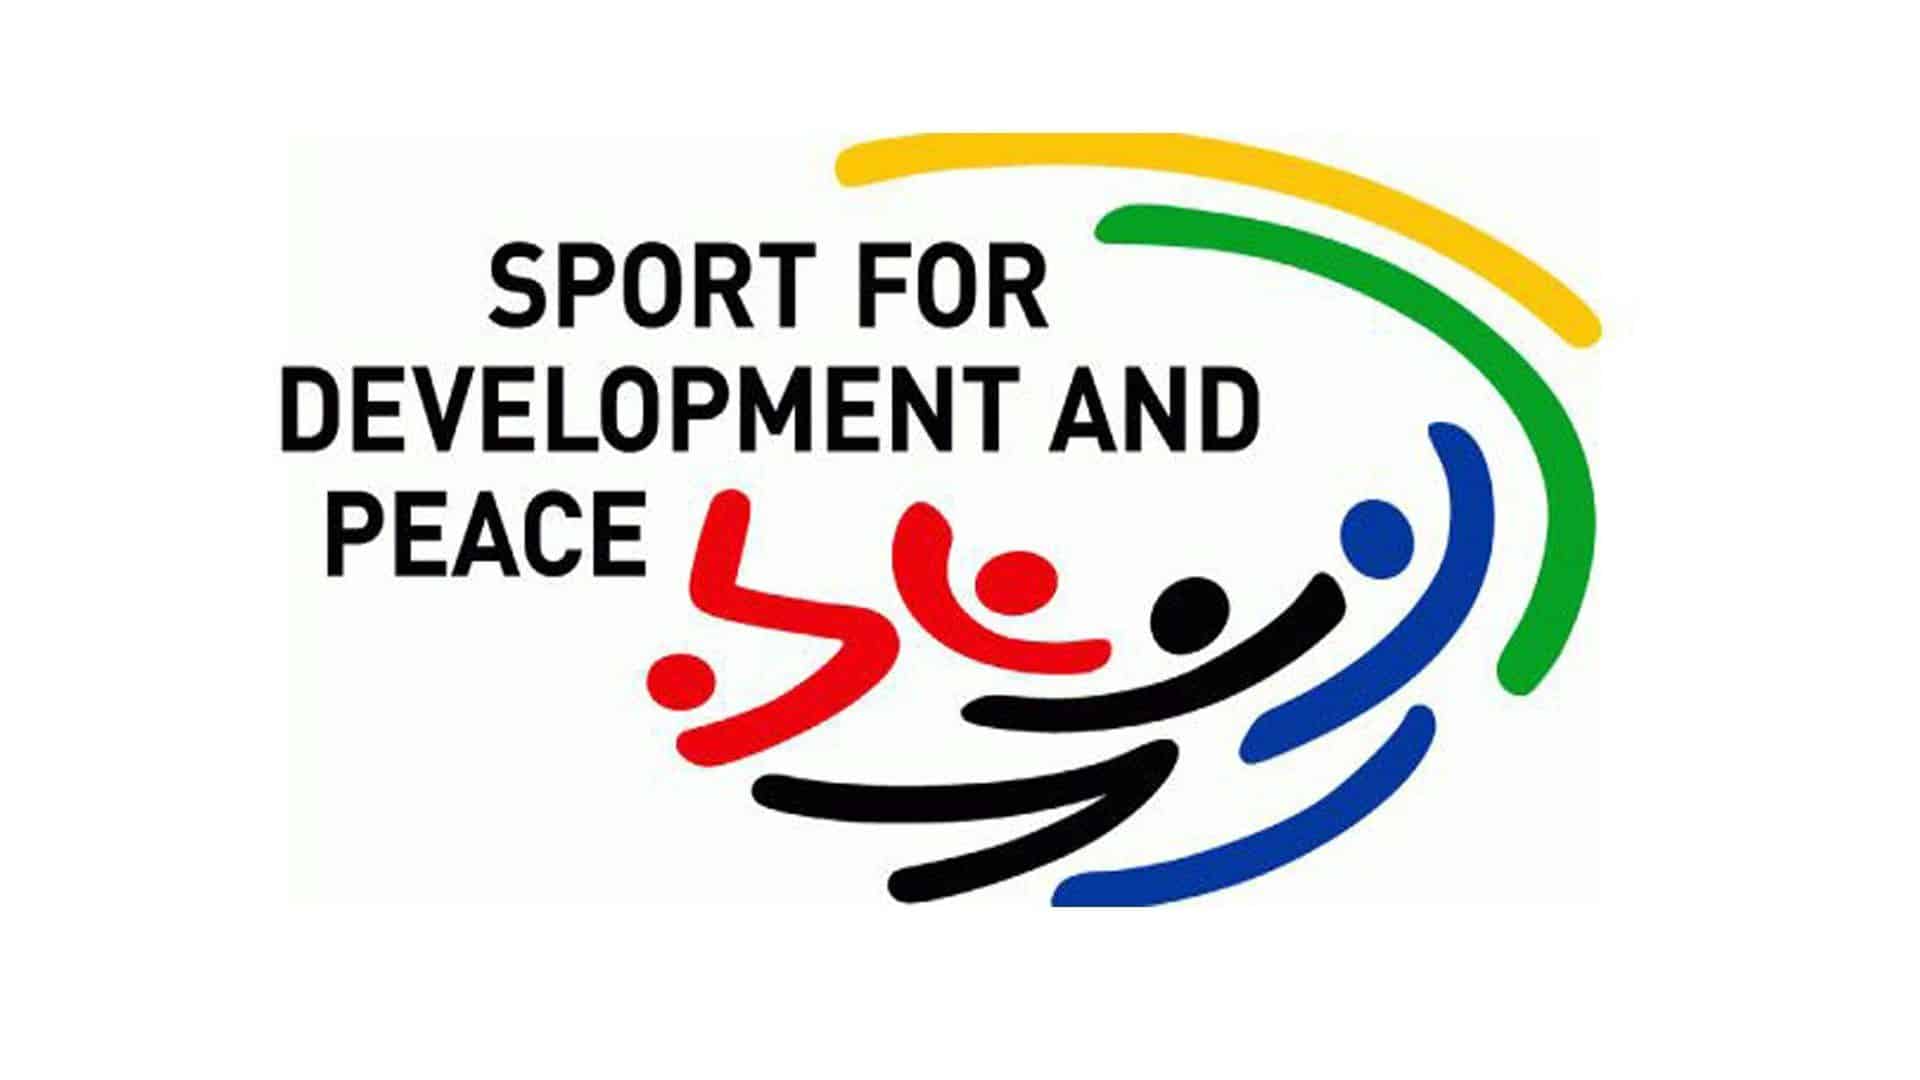 Giornata internazionale dello sport, dall’uguaglianza al valore della pace: l’esempio che diventa storia